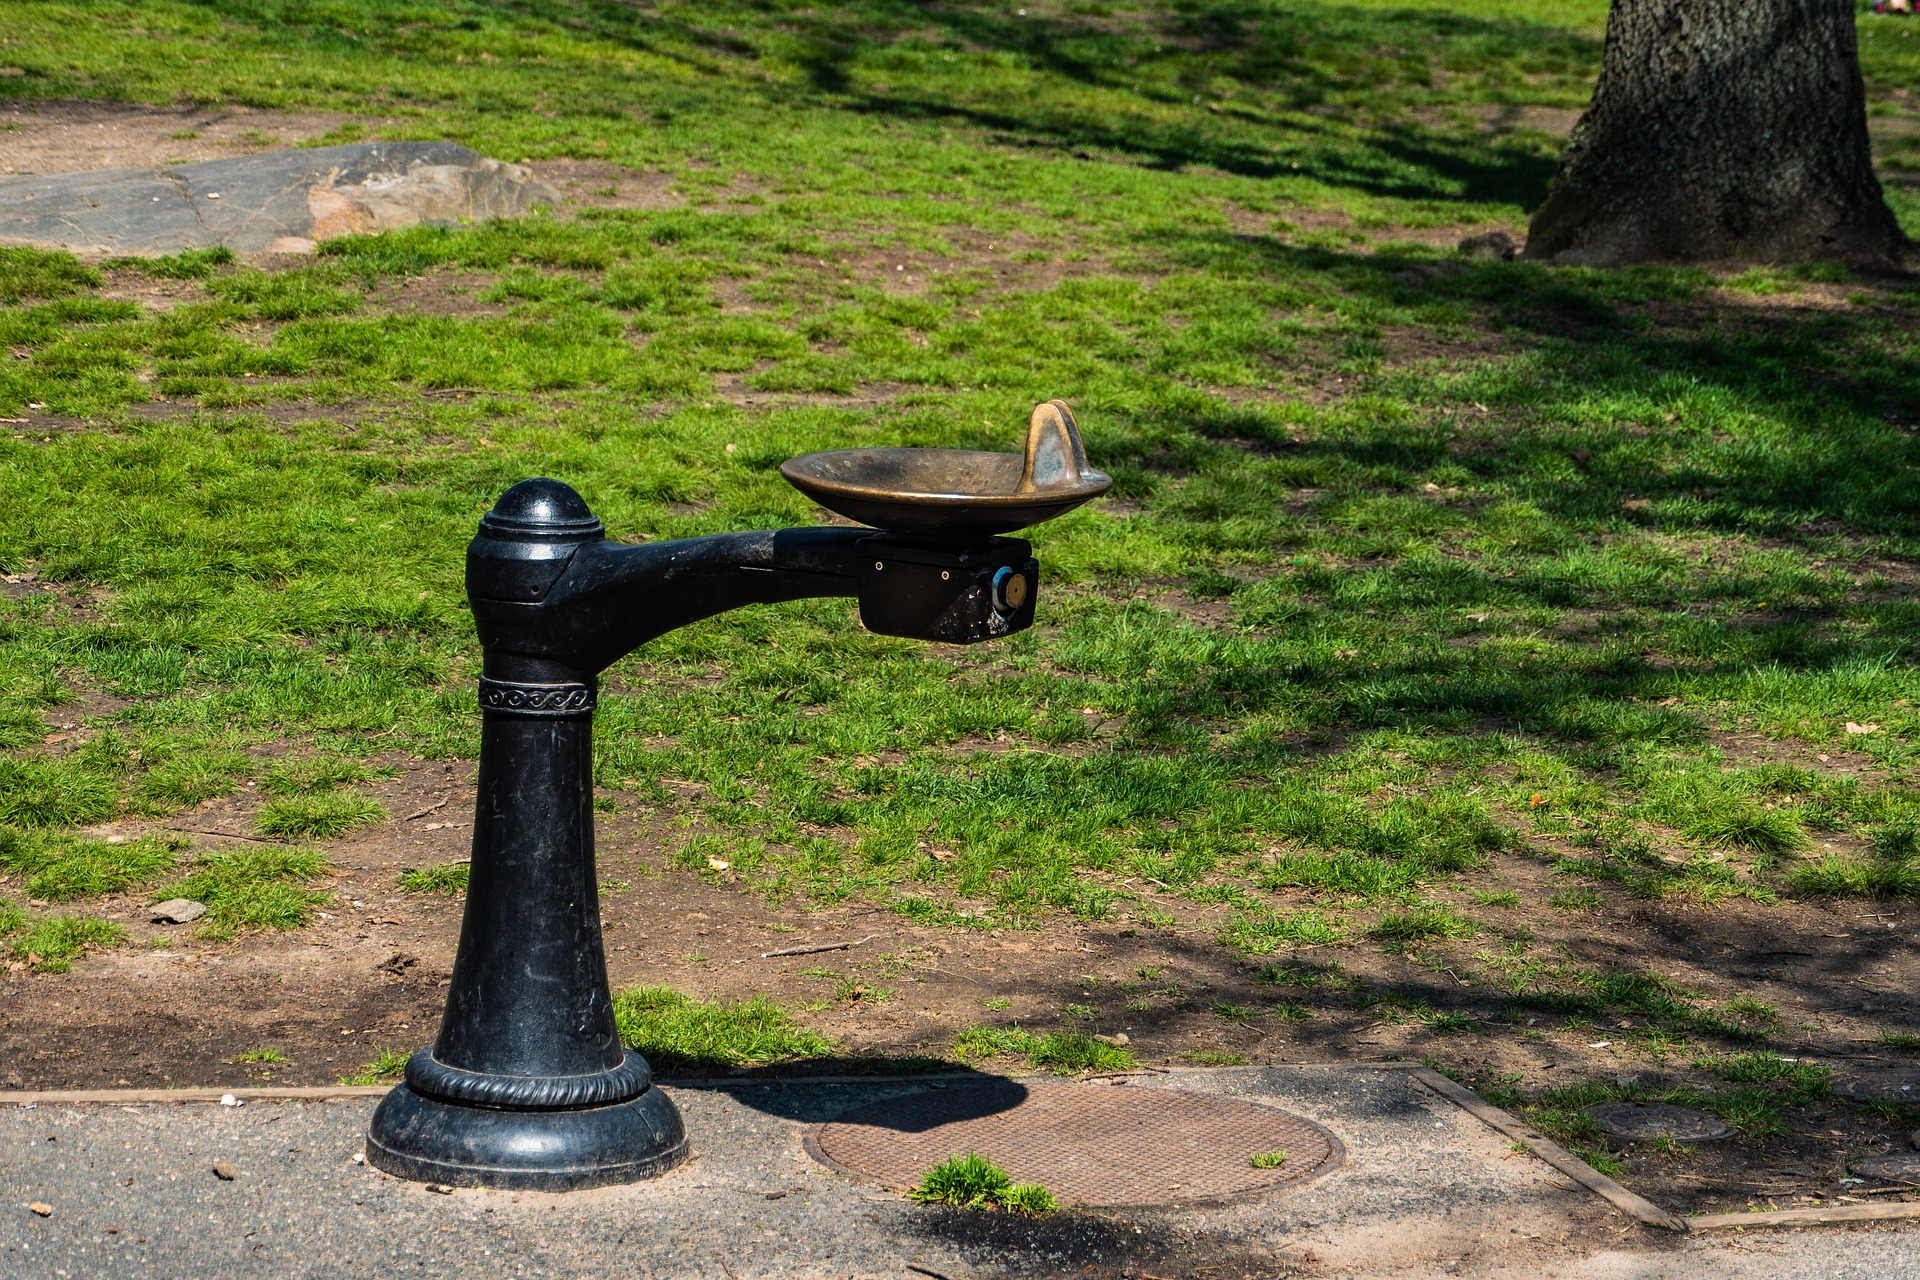 Купить фонтанчик для школы. Фонтанчики с питьевой водой в Ереване. Питьевой фонтанчик уличный. Питьевой фонтанчик в парке. Питьевые фонтанчики в парках.